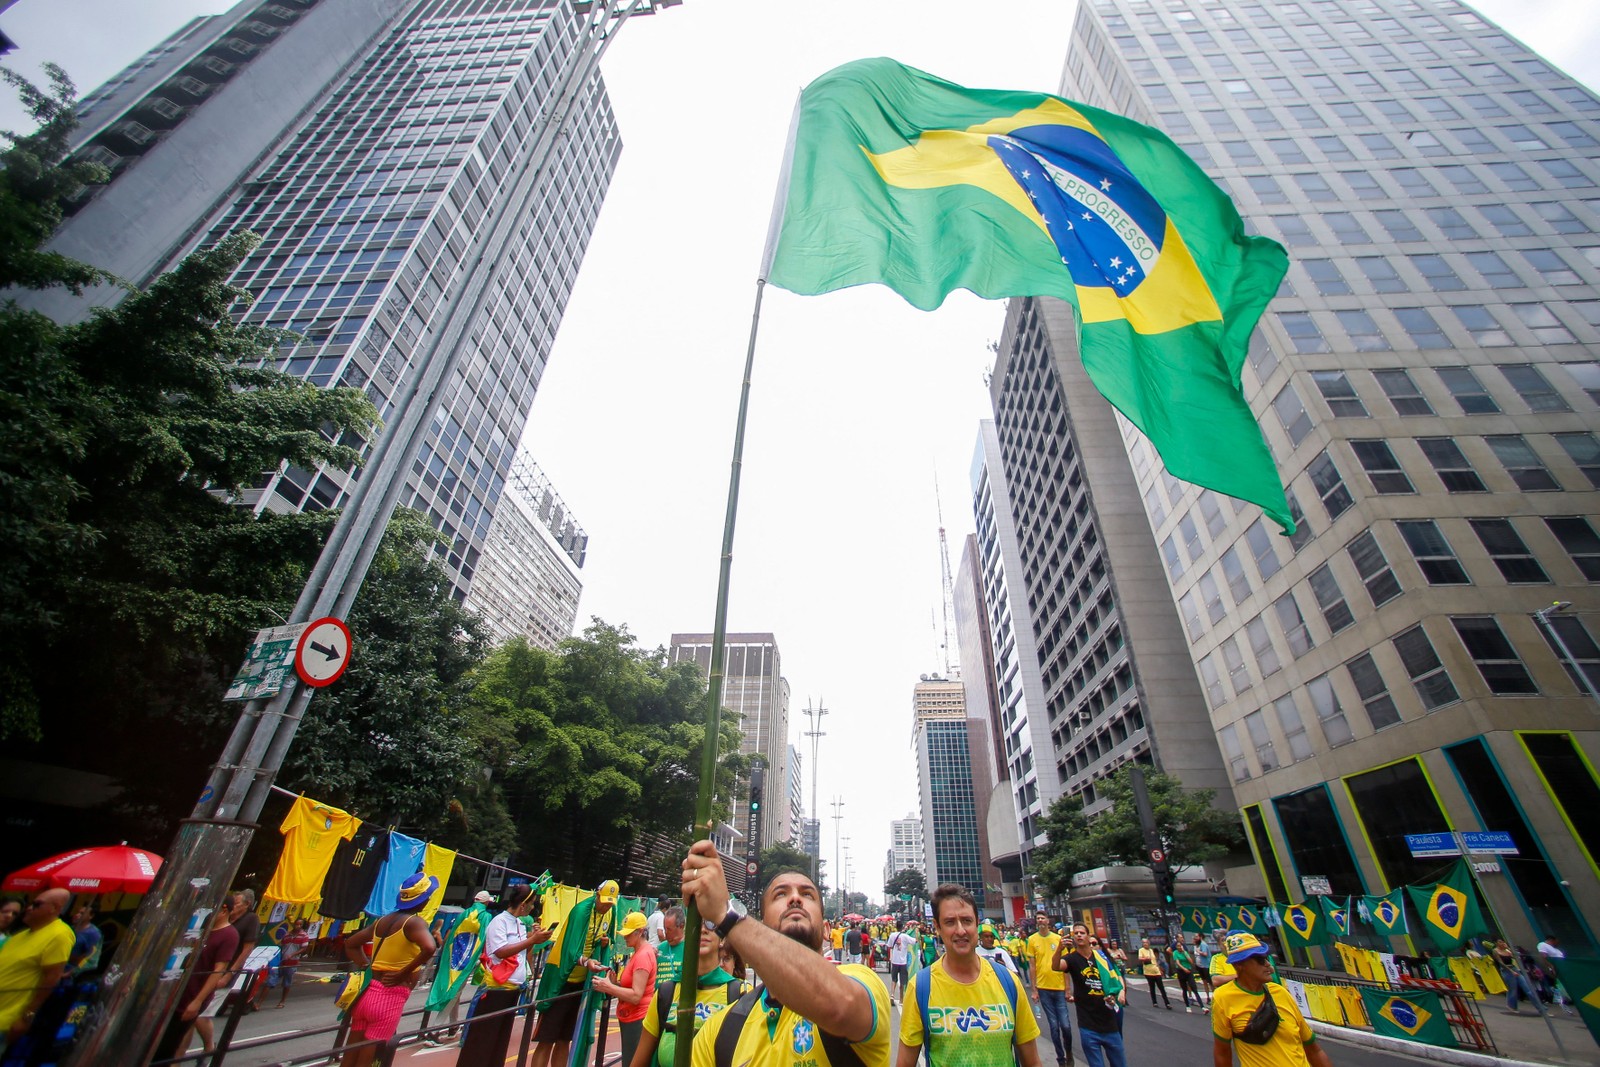 Os apoiadores acataram o pedido do ex-presidente e optaram por camisetas que estampavam palavras de ordem em exaltação a Bolsonaro e por slogans como “Deus, pátria e família” e “meu partido é o Brasil” — Foto: Miguel SCHINCARIOL / AFP